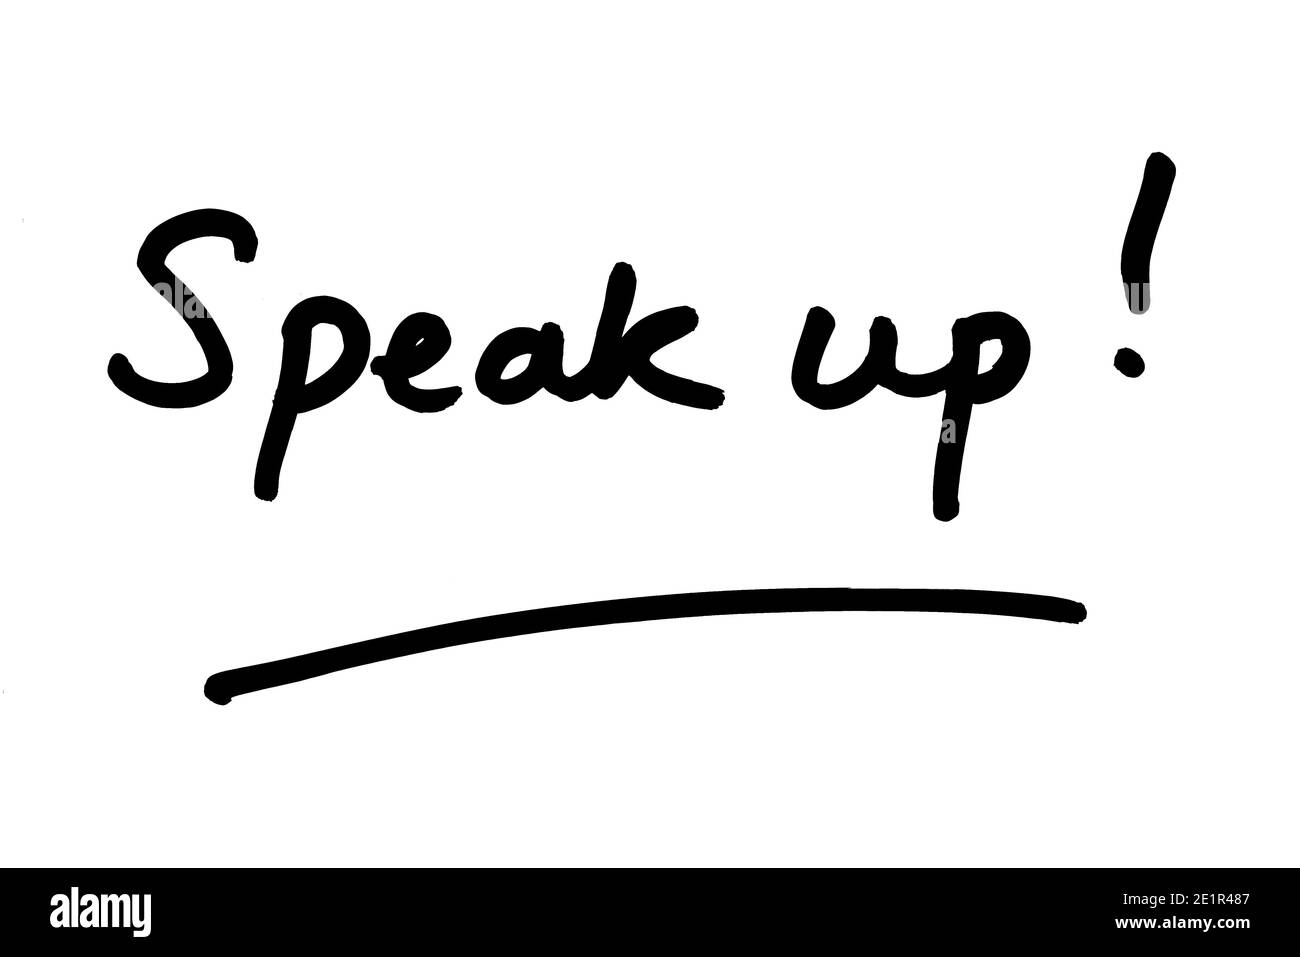 Speak up! handwritten on a white background. Stock Photo